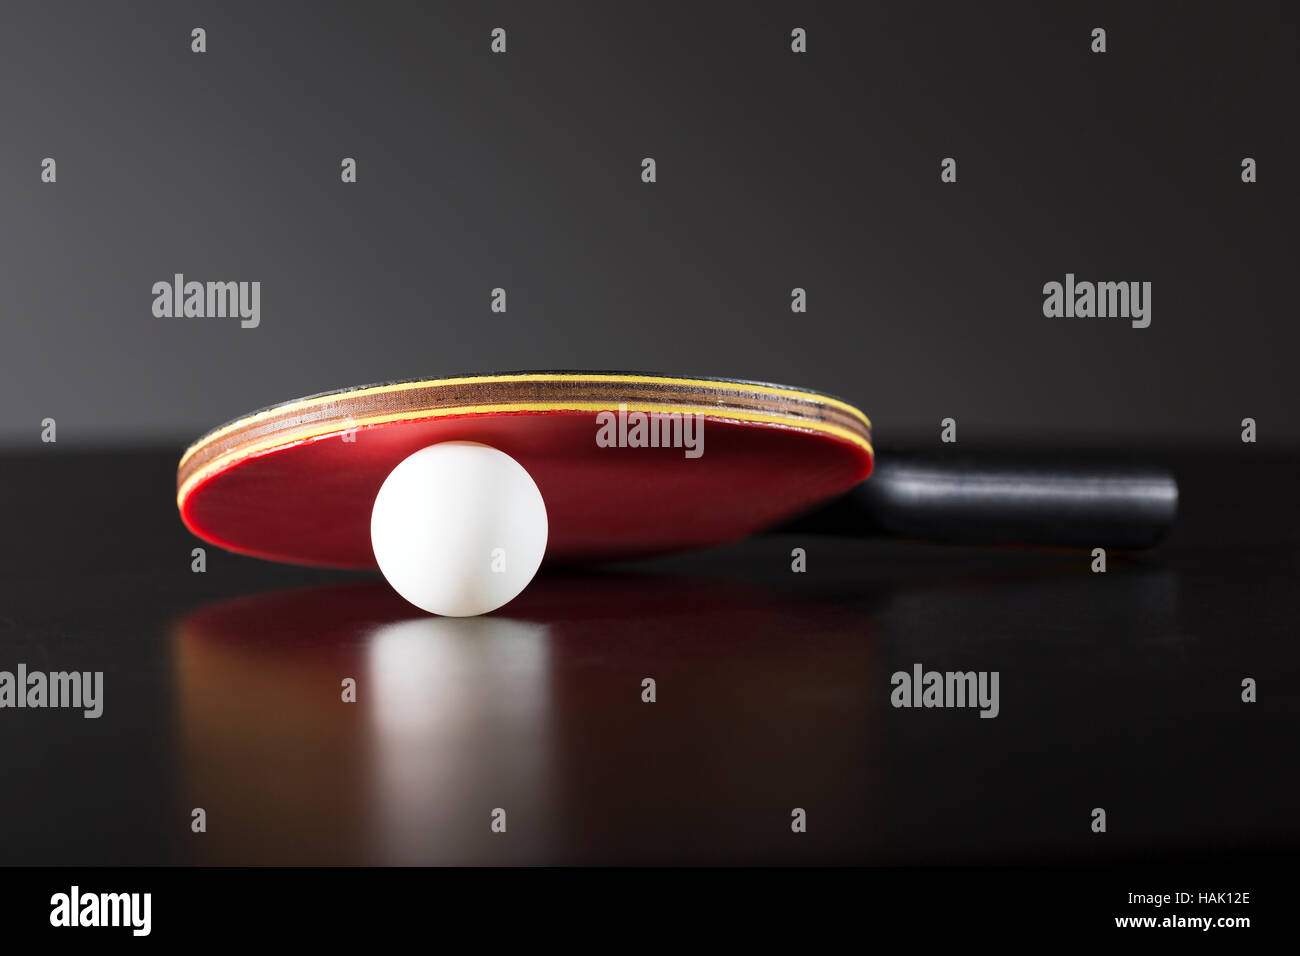 Raqueta y pelota de ping-pong en la mesa oscura Foto de stock